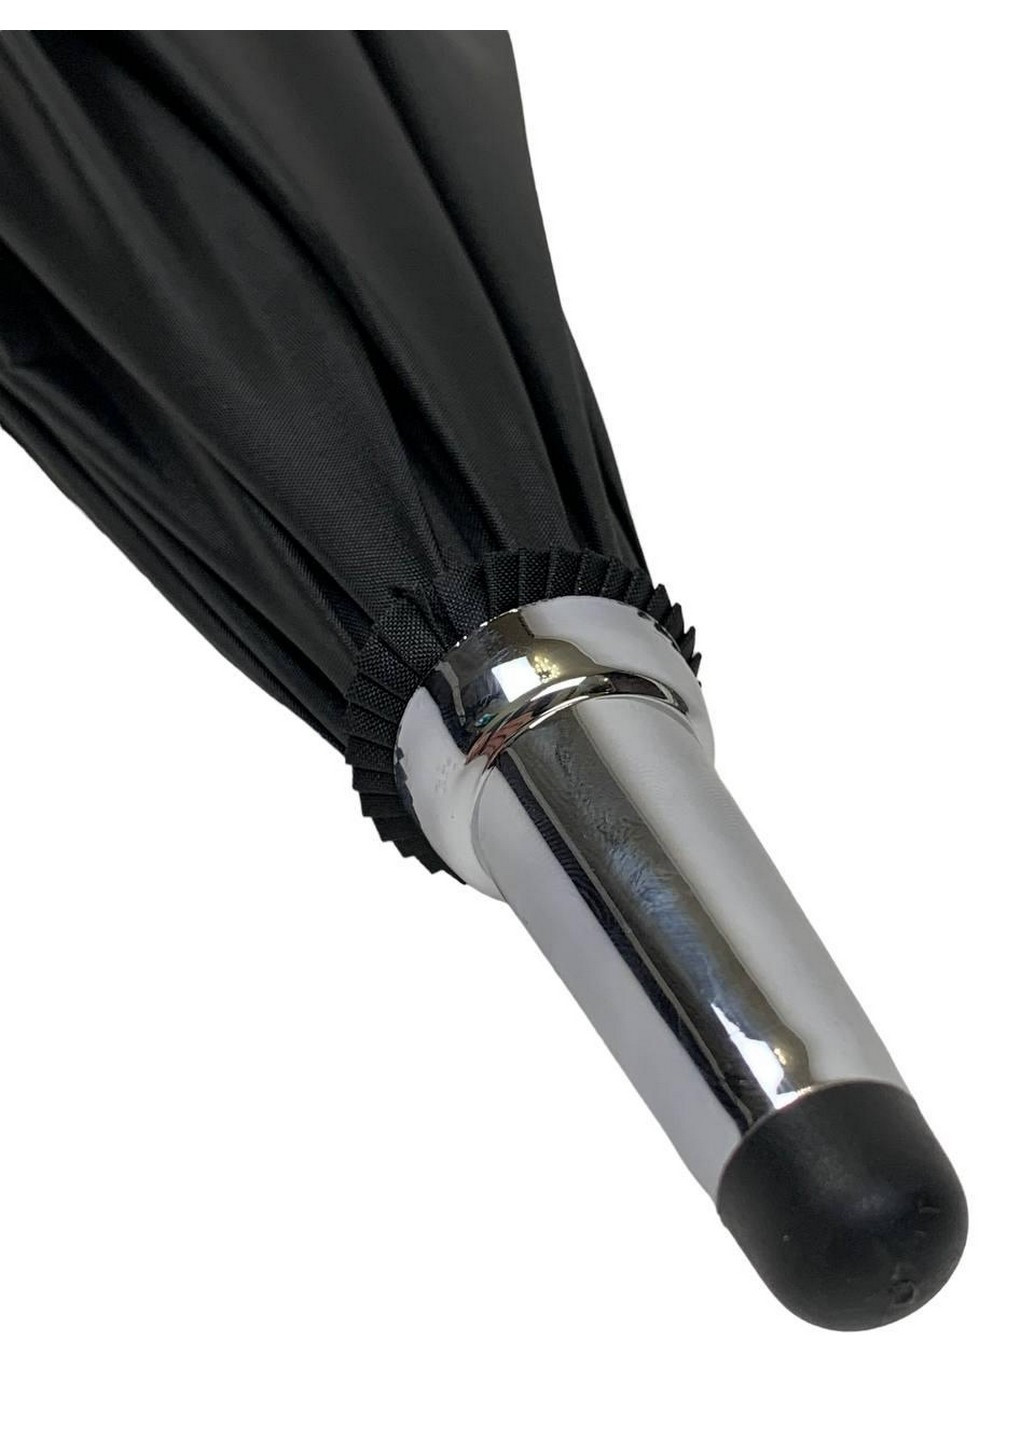 Женский зонт полуавтомат 120 см RST (259212859)